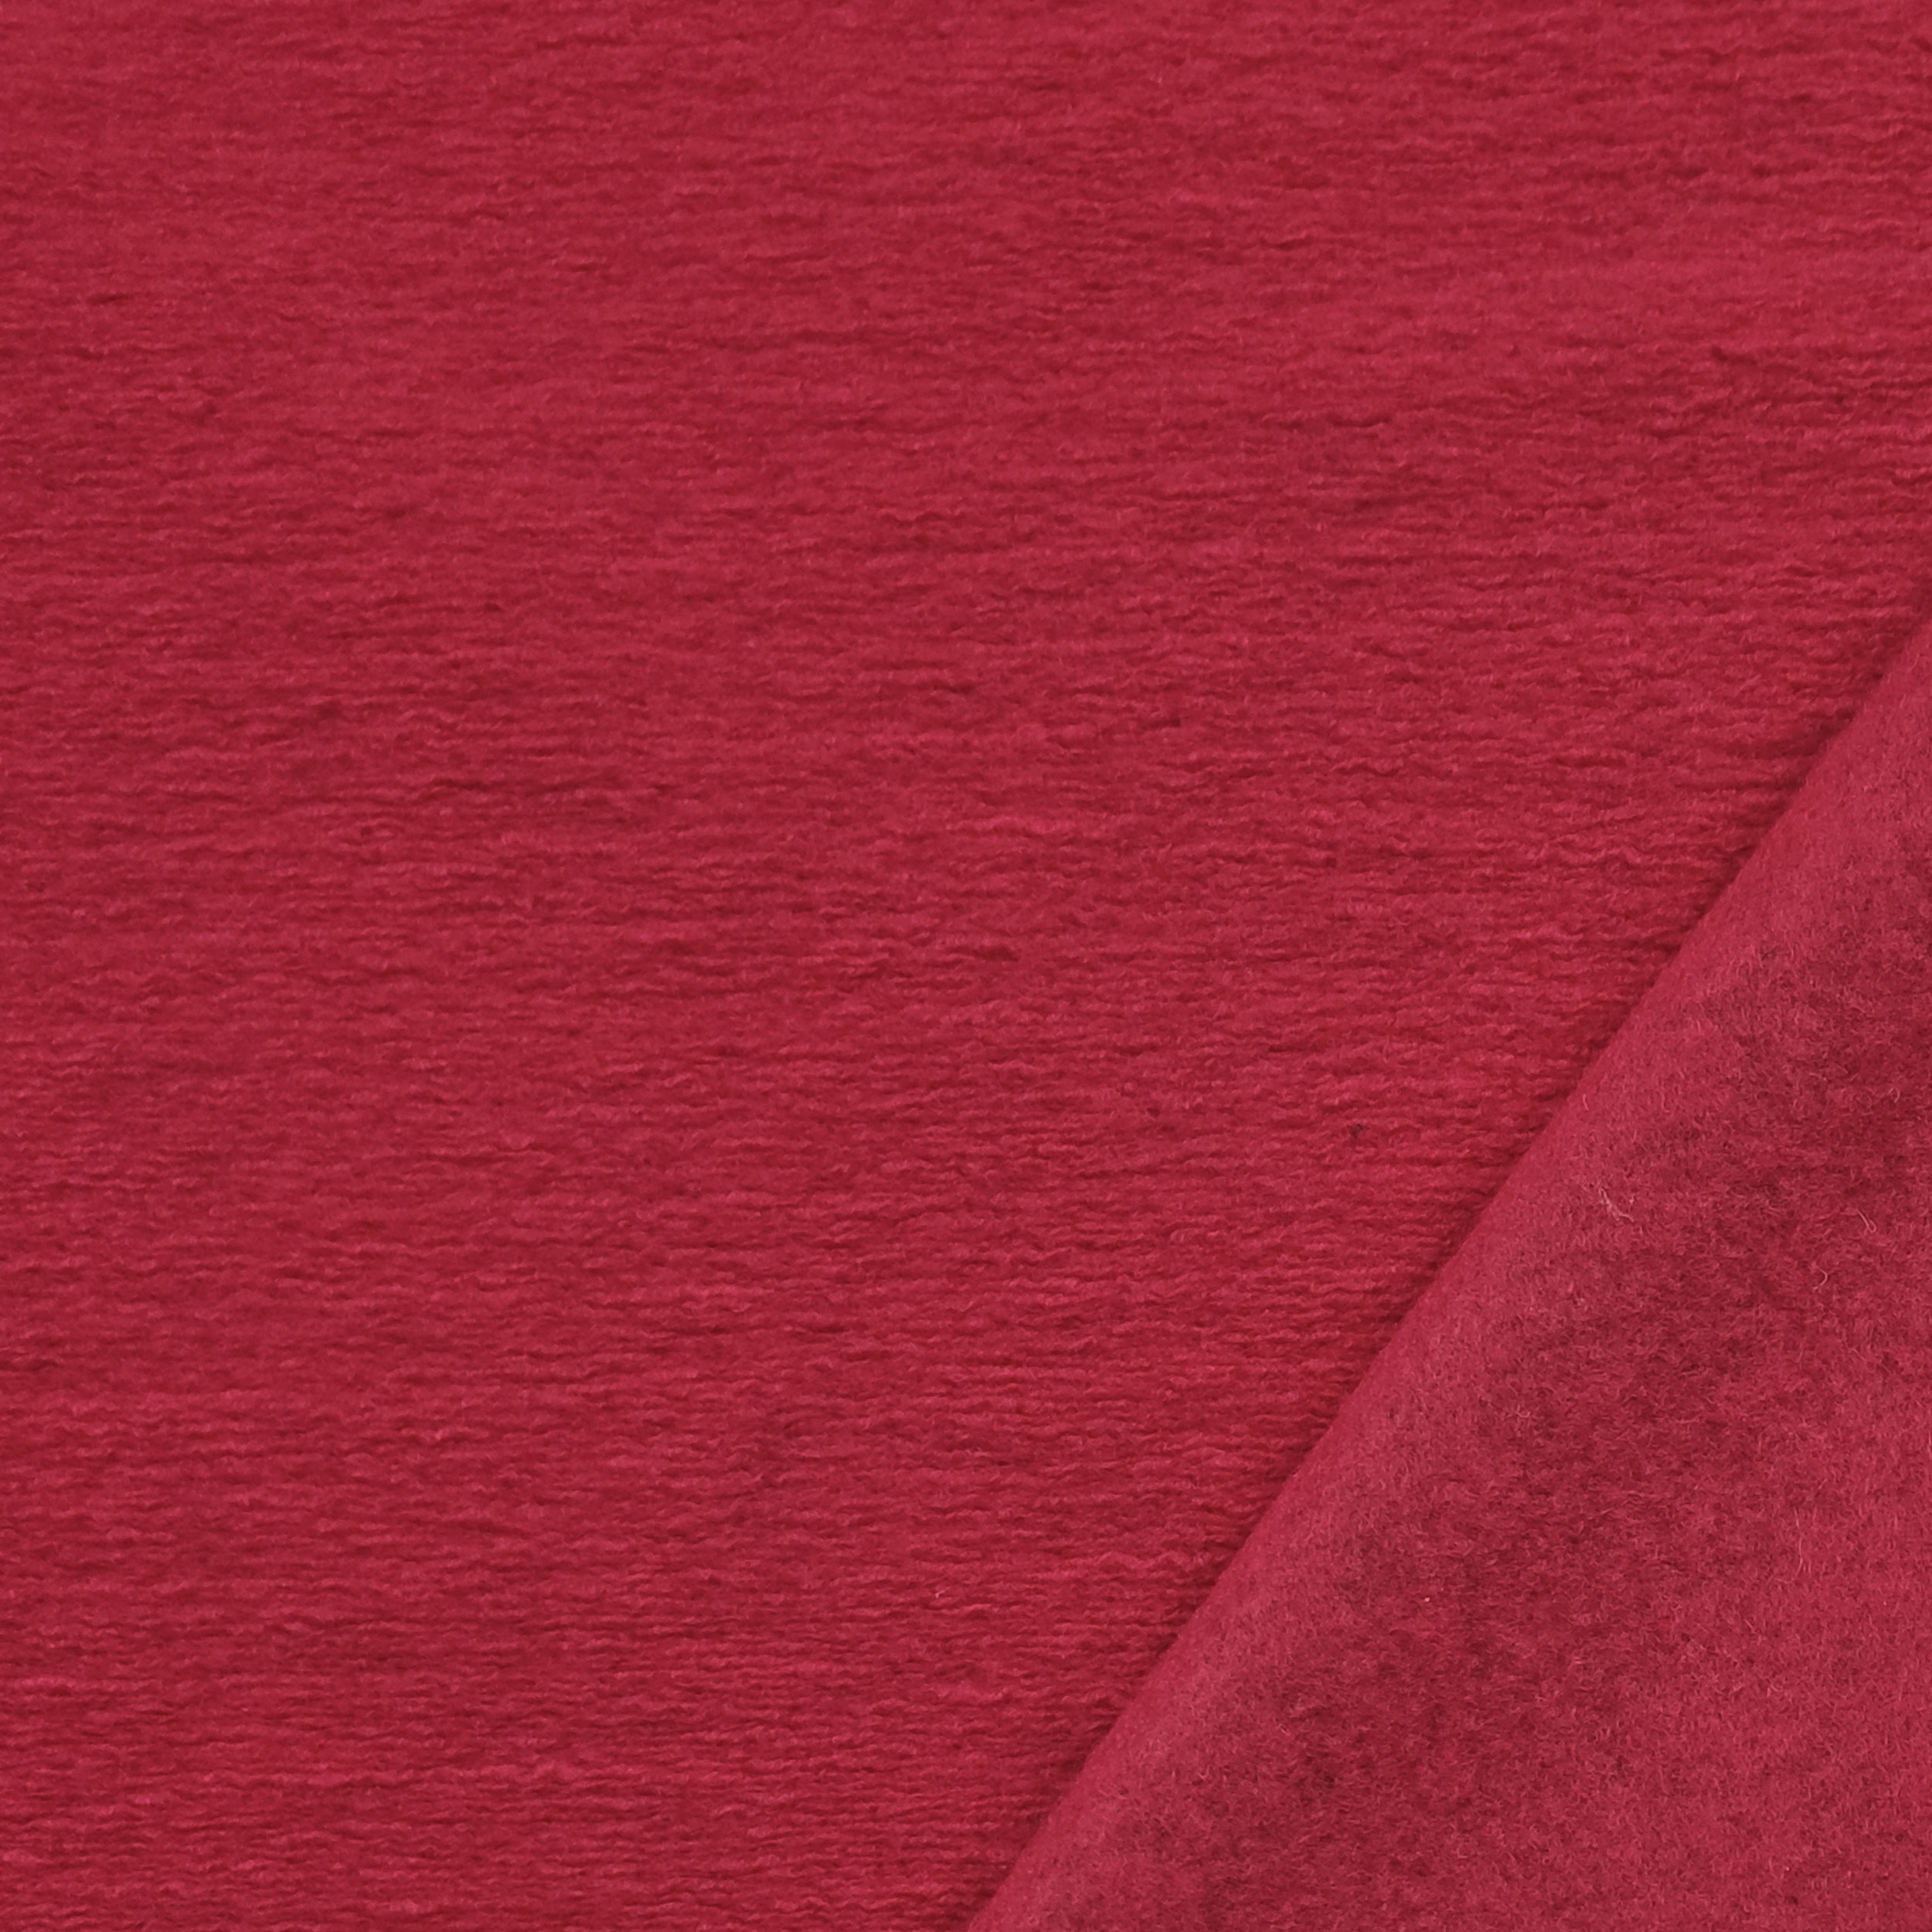 tessuto rosso per cappotti